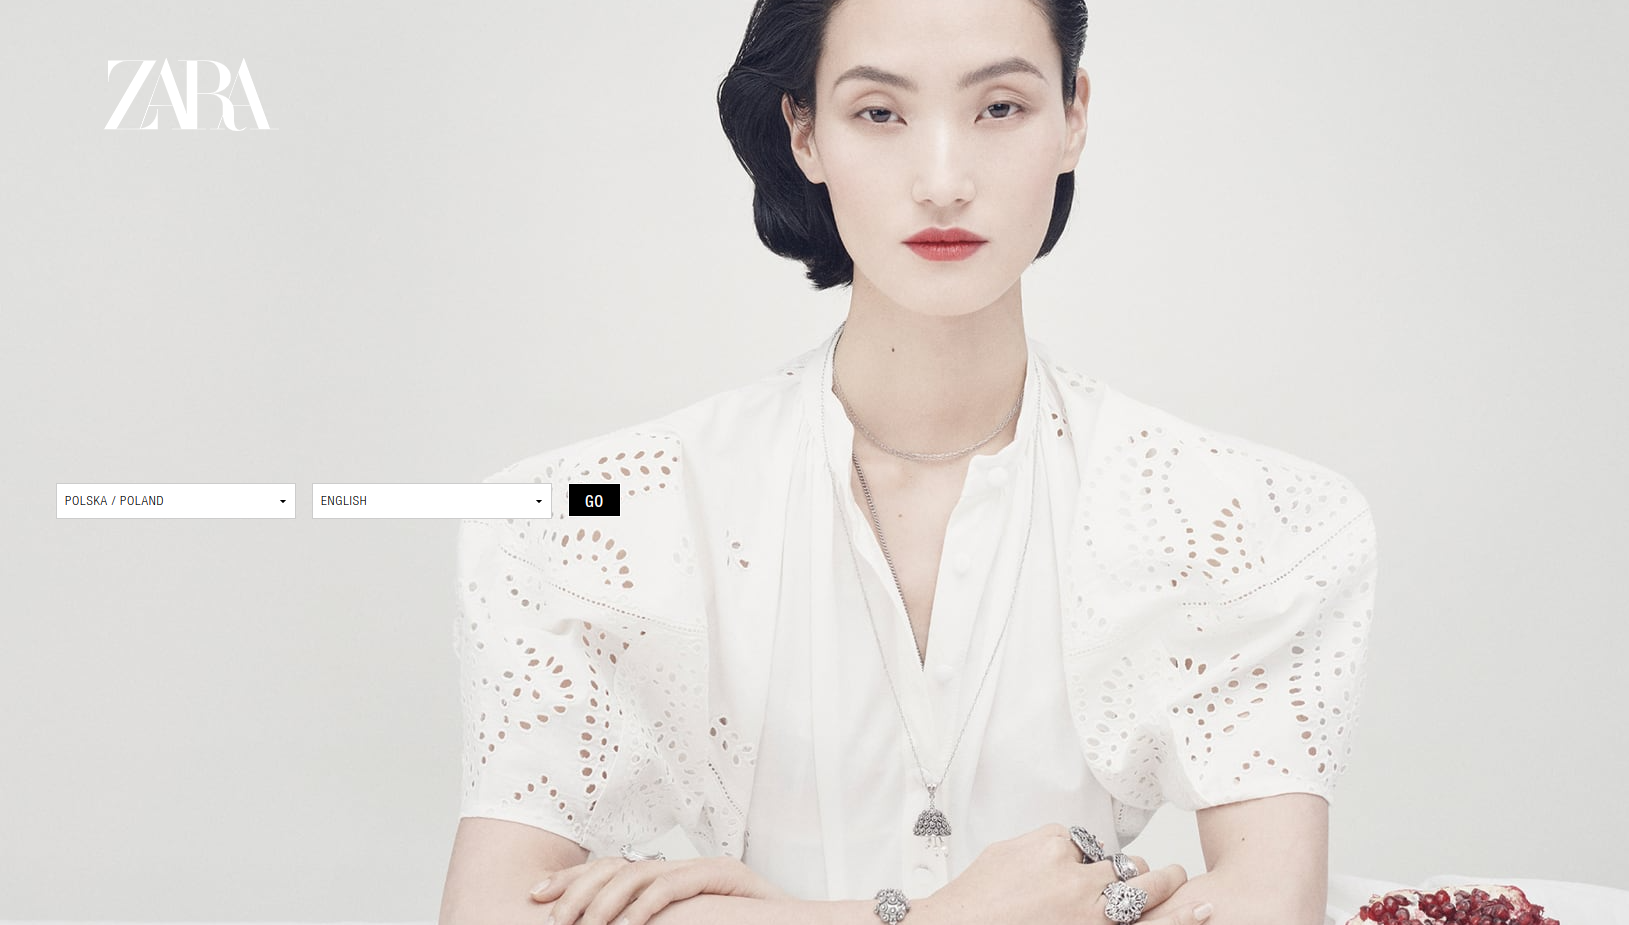 Strona powitalna firmy Zara jest przykładem przejściowego landing page'a